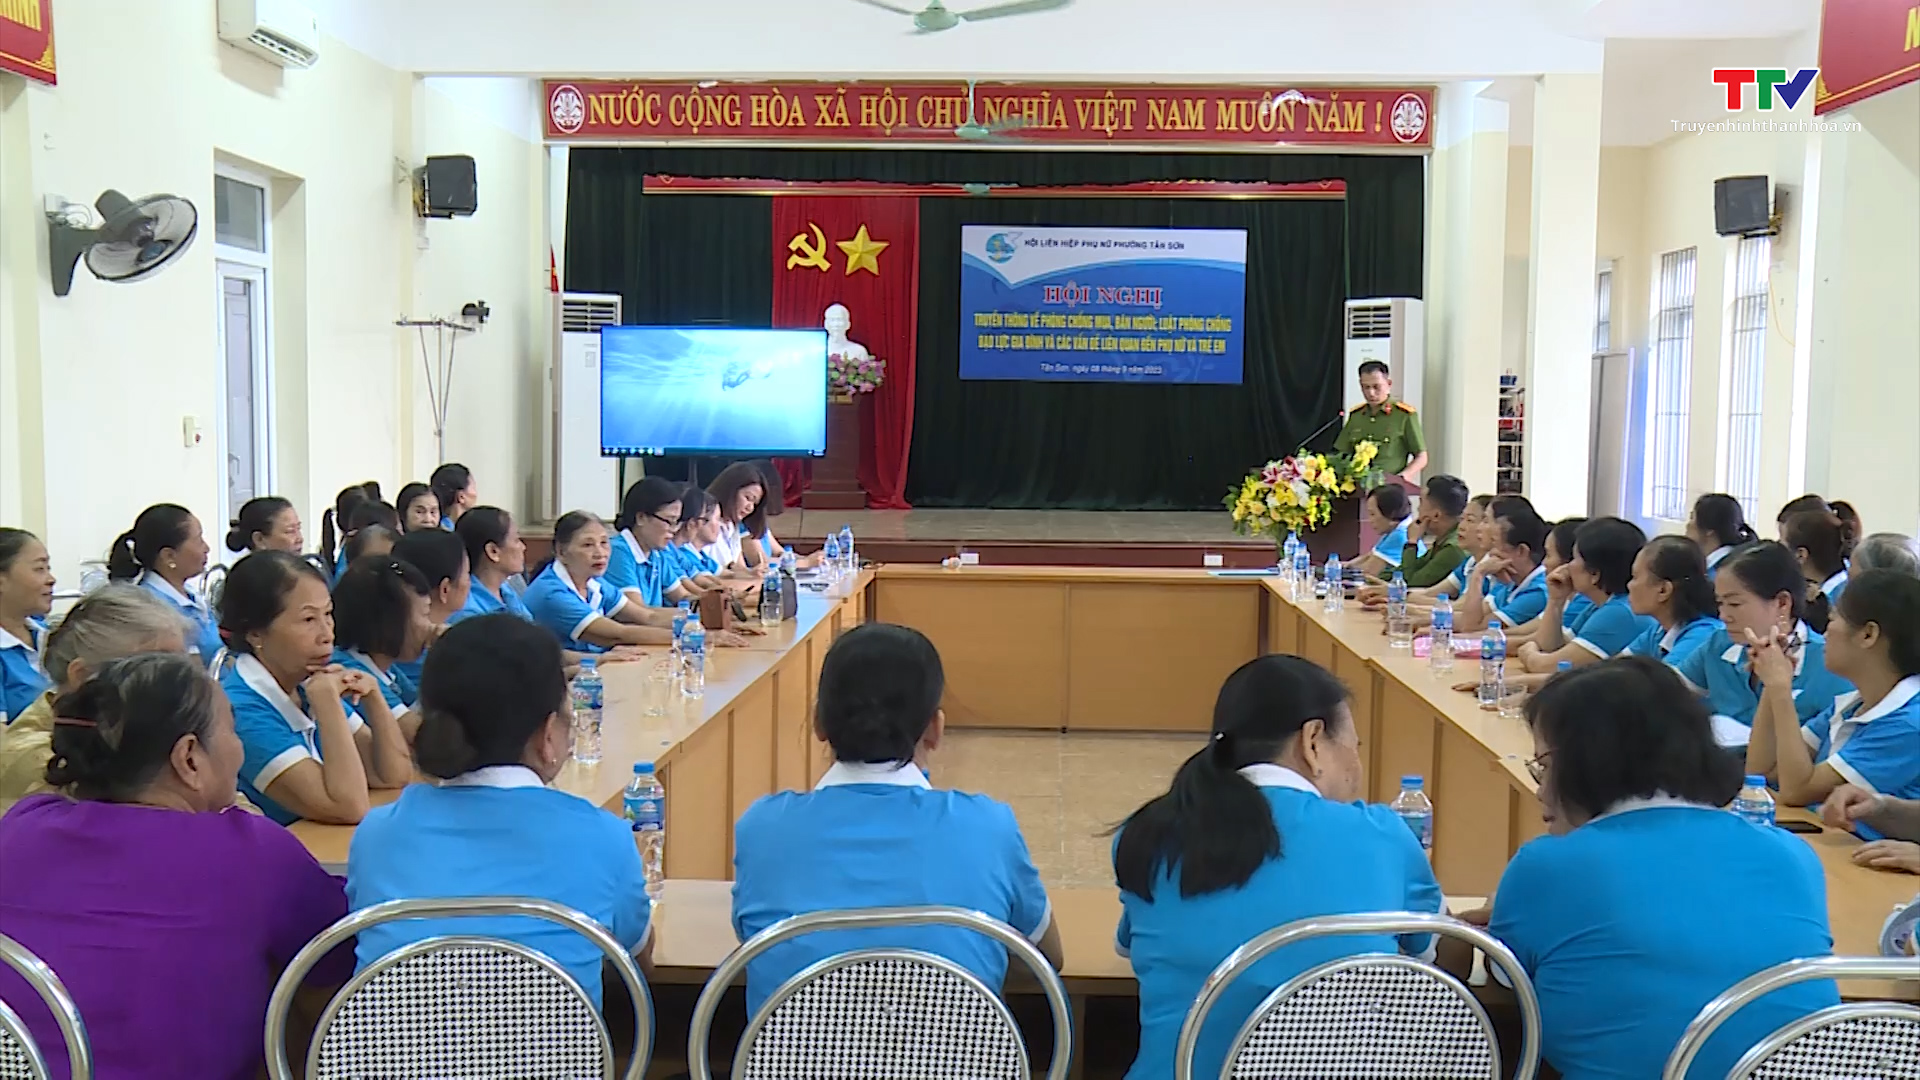 Tin tổng hợp hoạt động chính trị, kinh tế, văn hóa, xã hội trên địa bàn thành phố Thanh Hóa từ 7/9 - 13/9 - Ảnh 3.